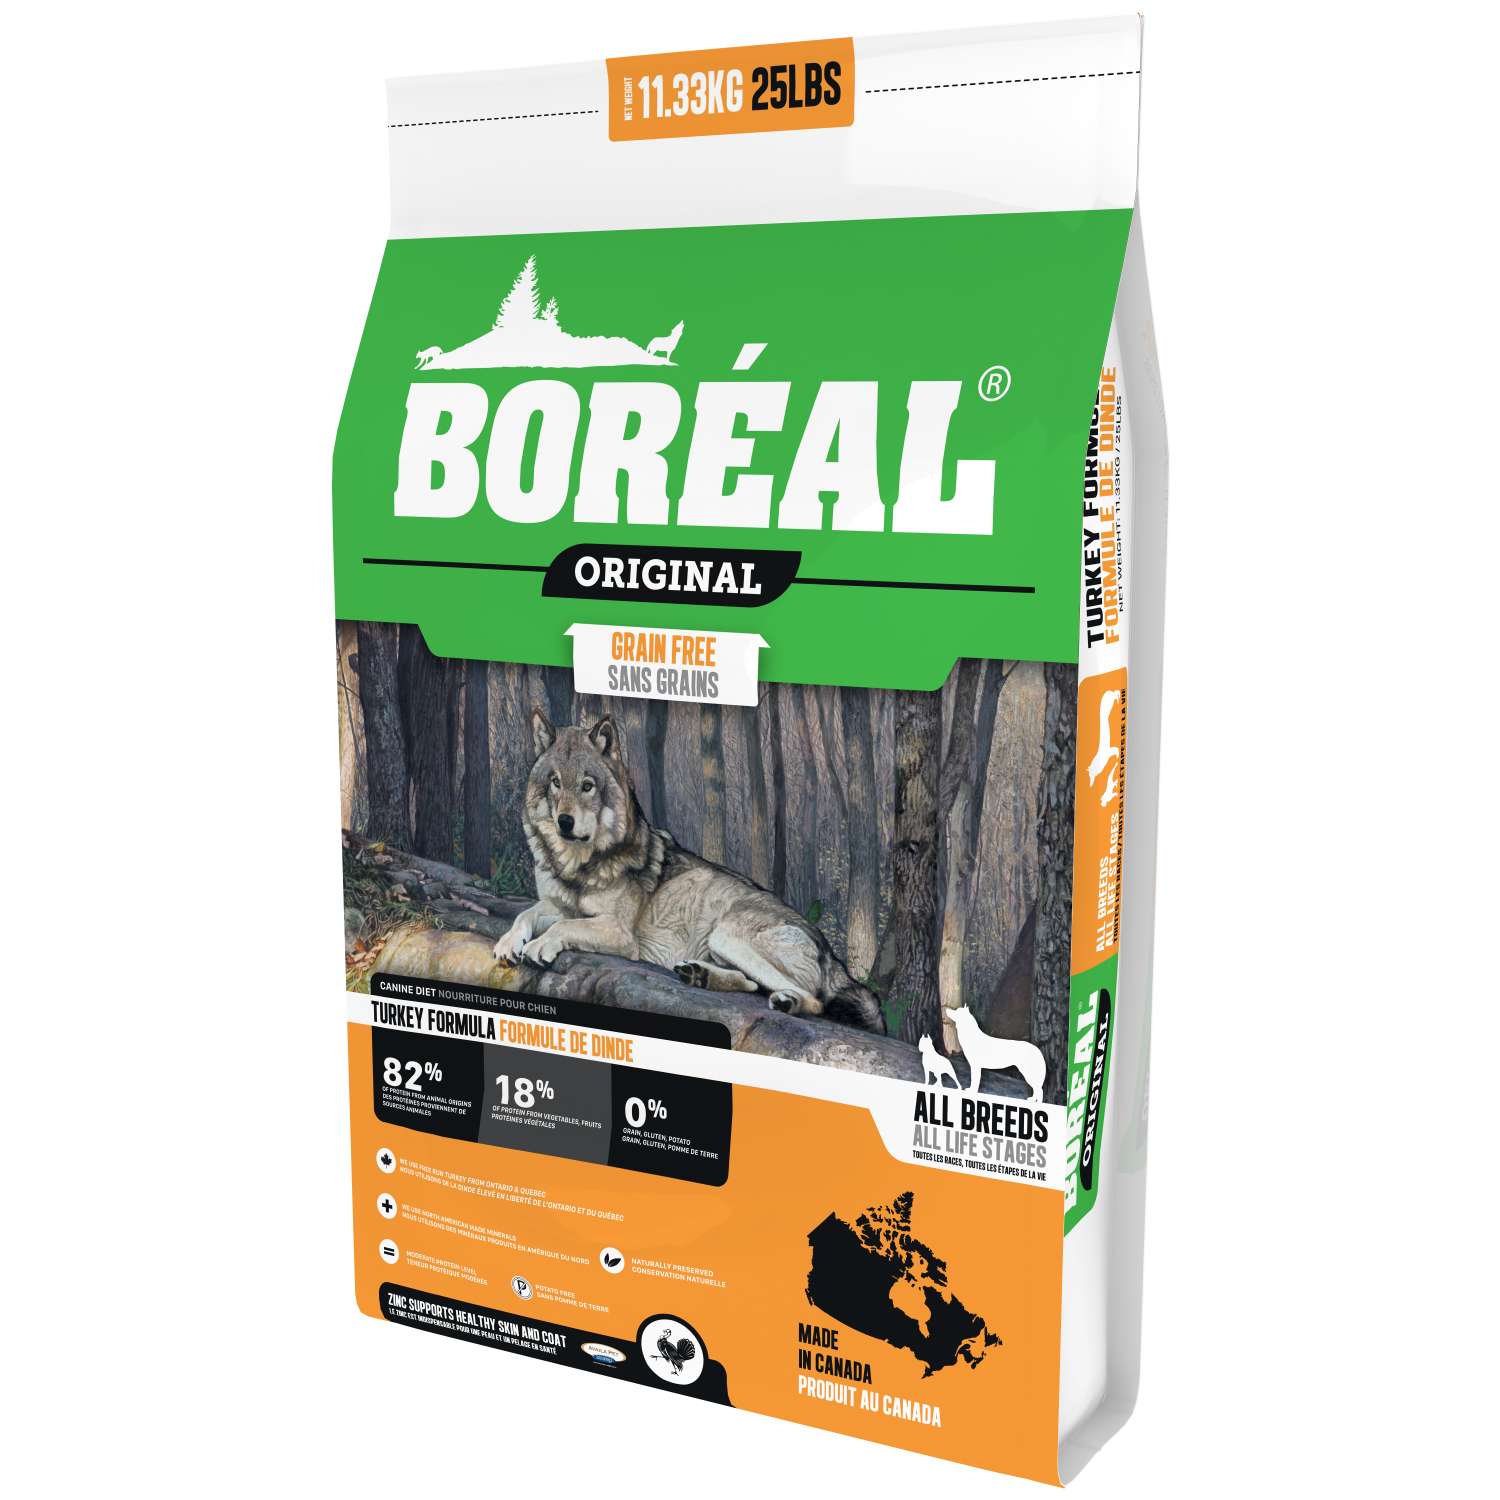 Корм для собак Boreal Original с индейкой 11.33кг - фото 1